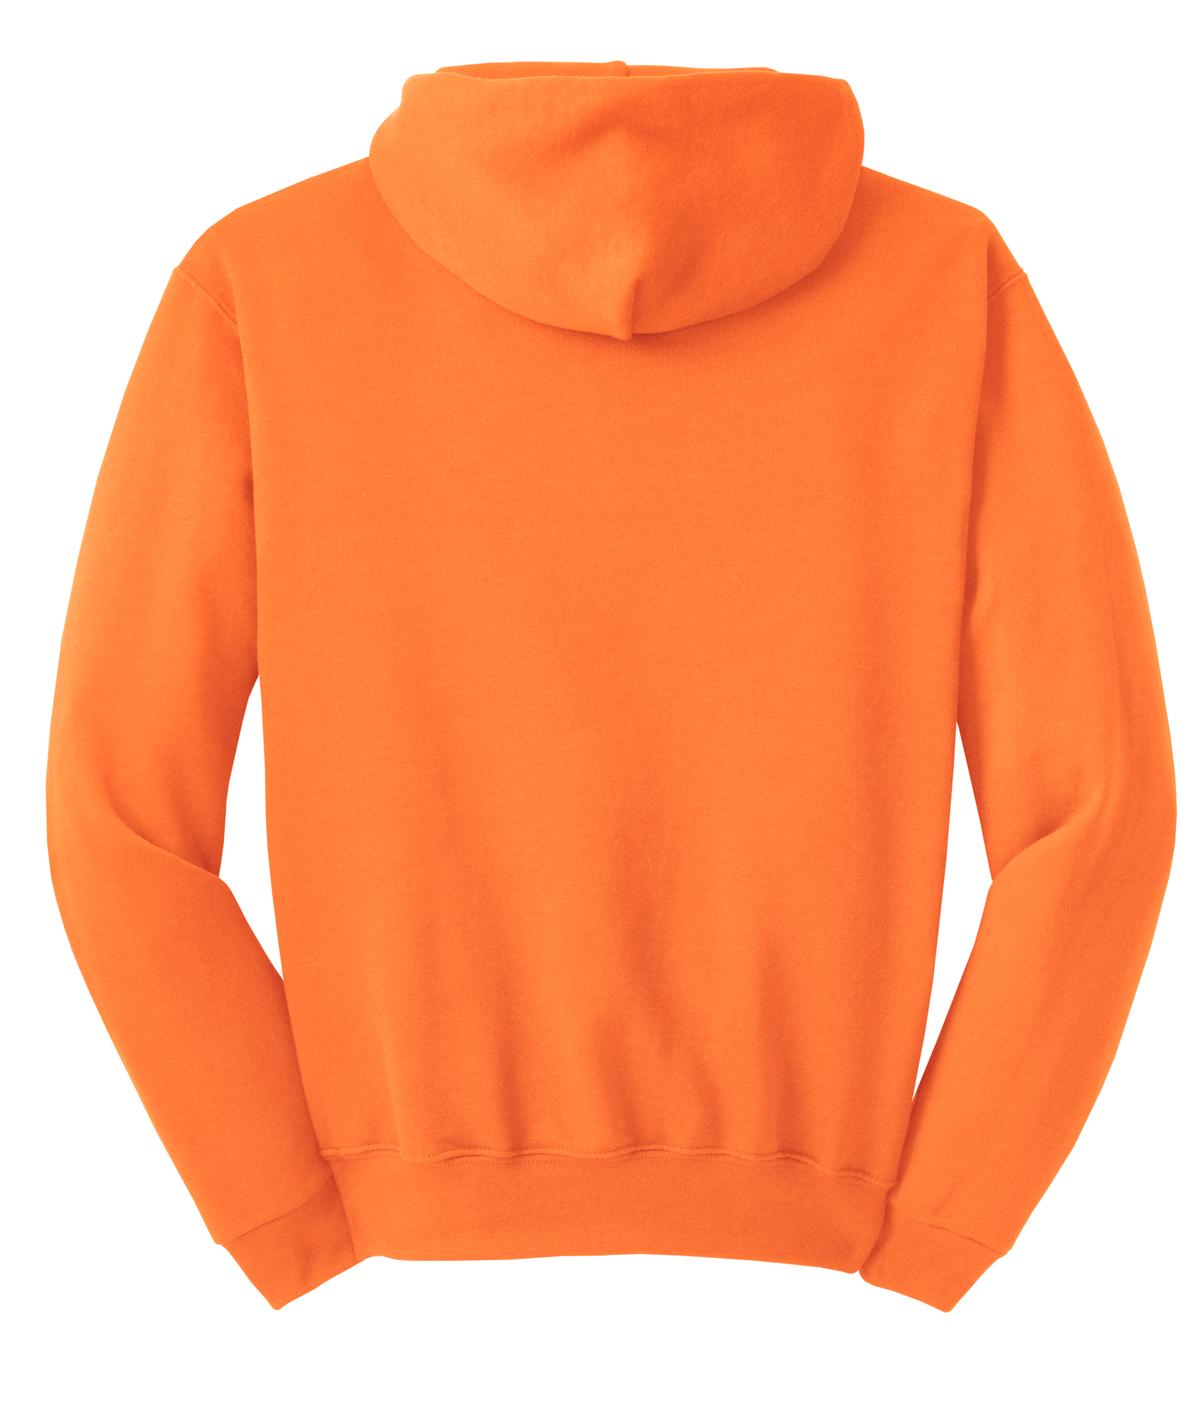 Jerzees - NuBlend Pullover Hooded Sweatshirt. 996M